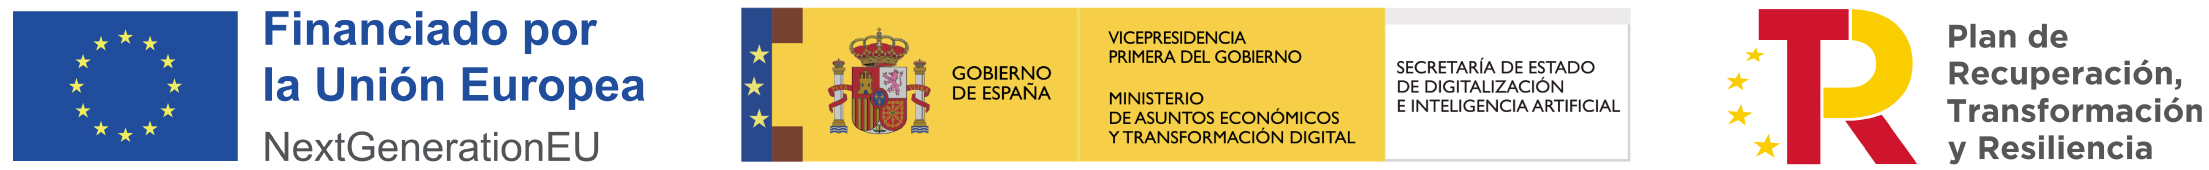 Logotipos "Financiación de la Unión Europea", "Ministerio de Asuntos Económicos y Transformación Digital" y "Plan de Recuperación, Transformación y Resiliencia 